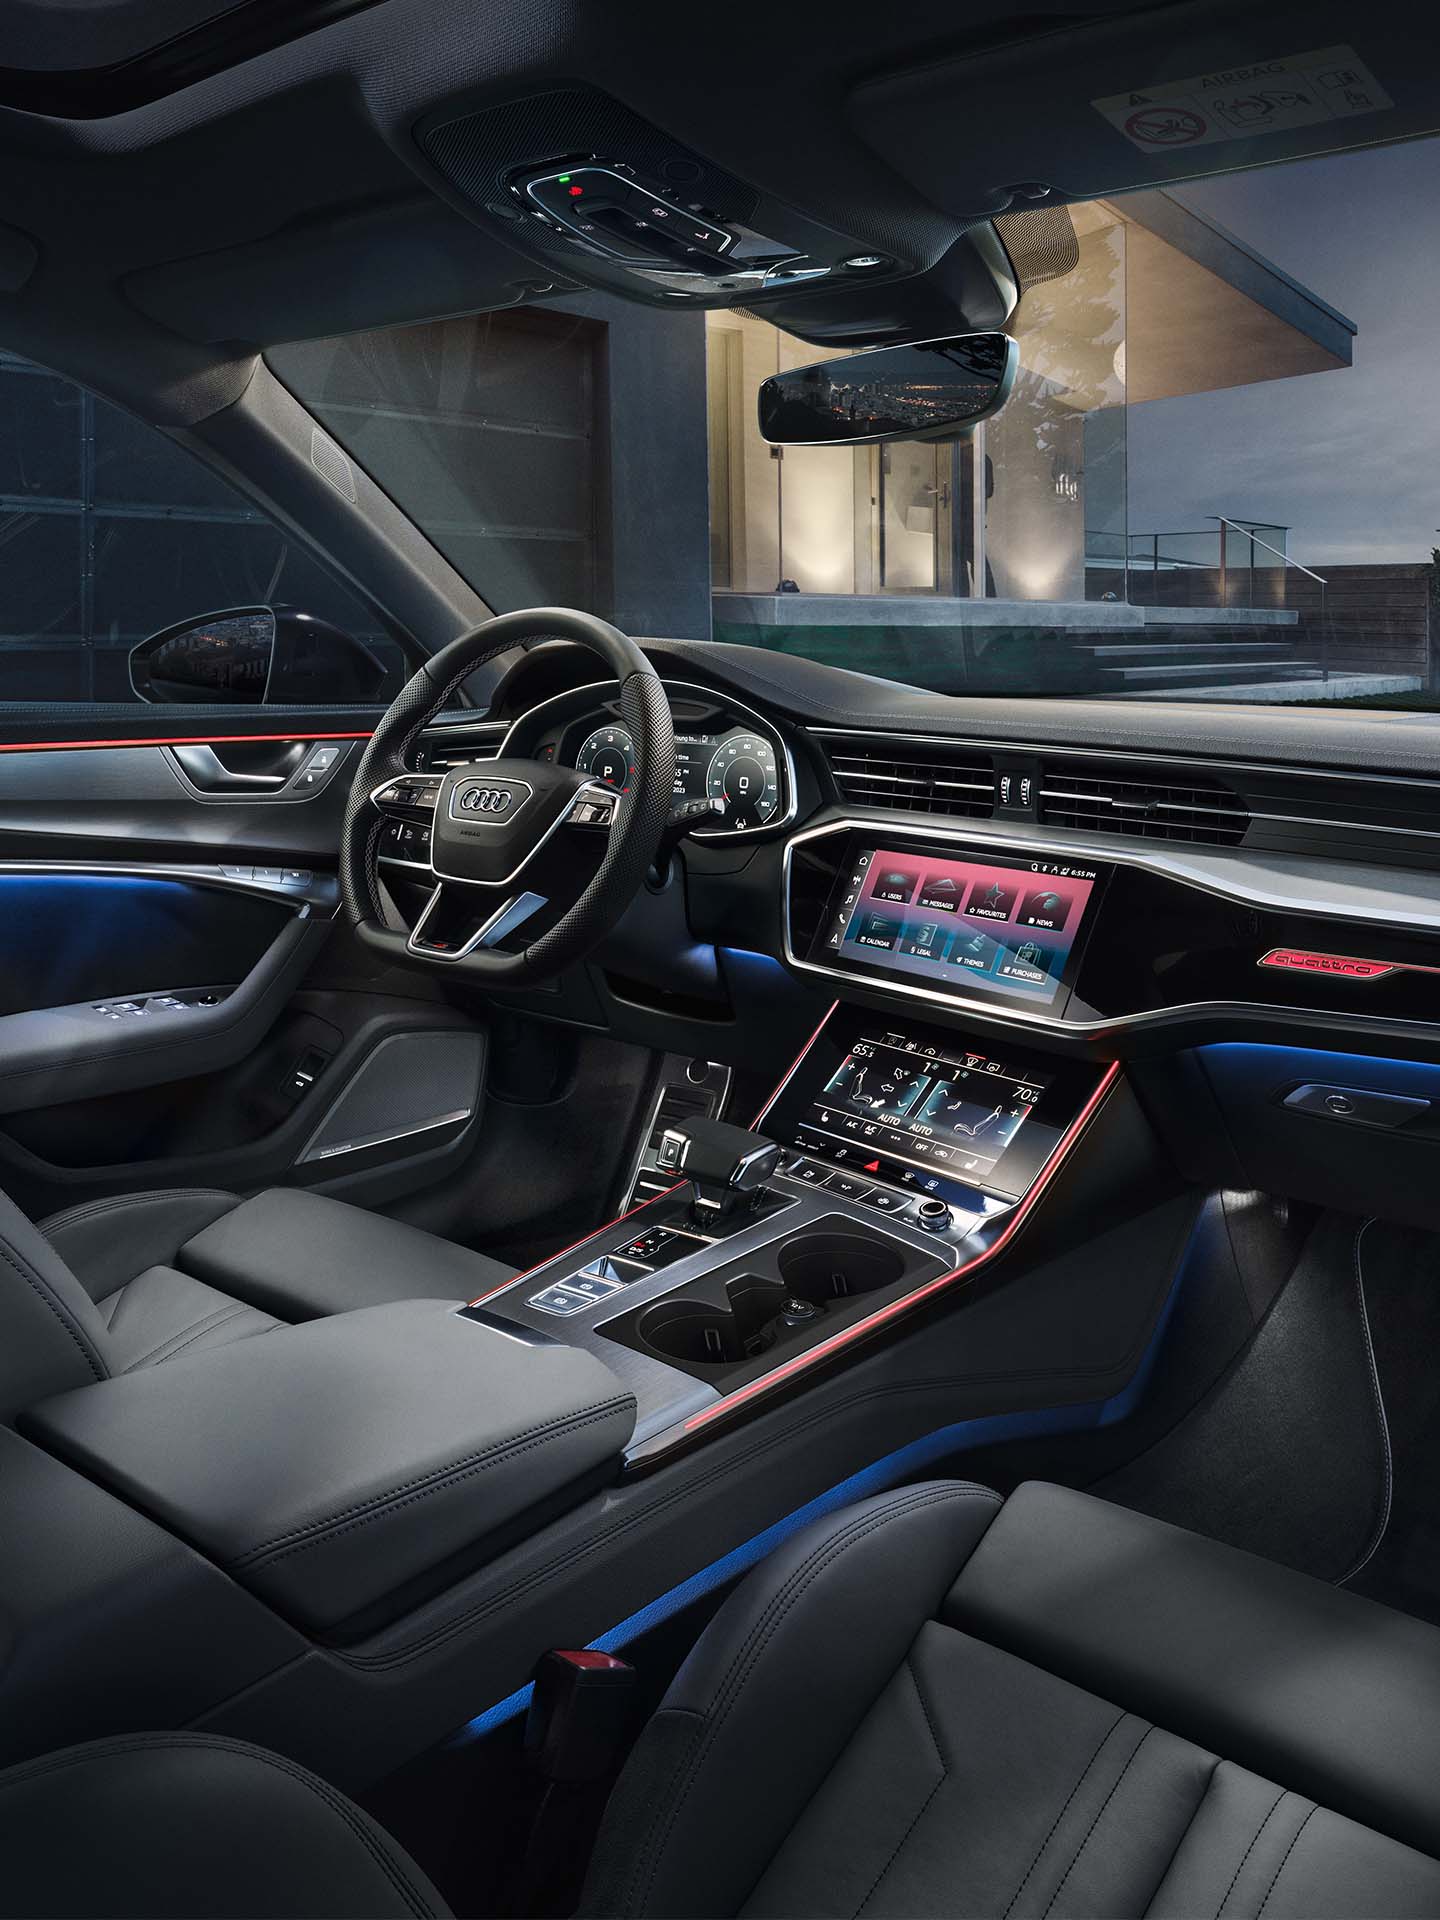 Thèmes lumineux Audi dans une vue de cockpit